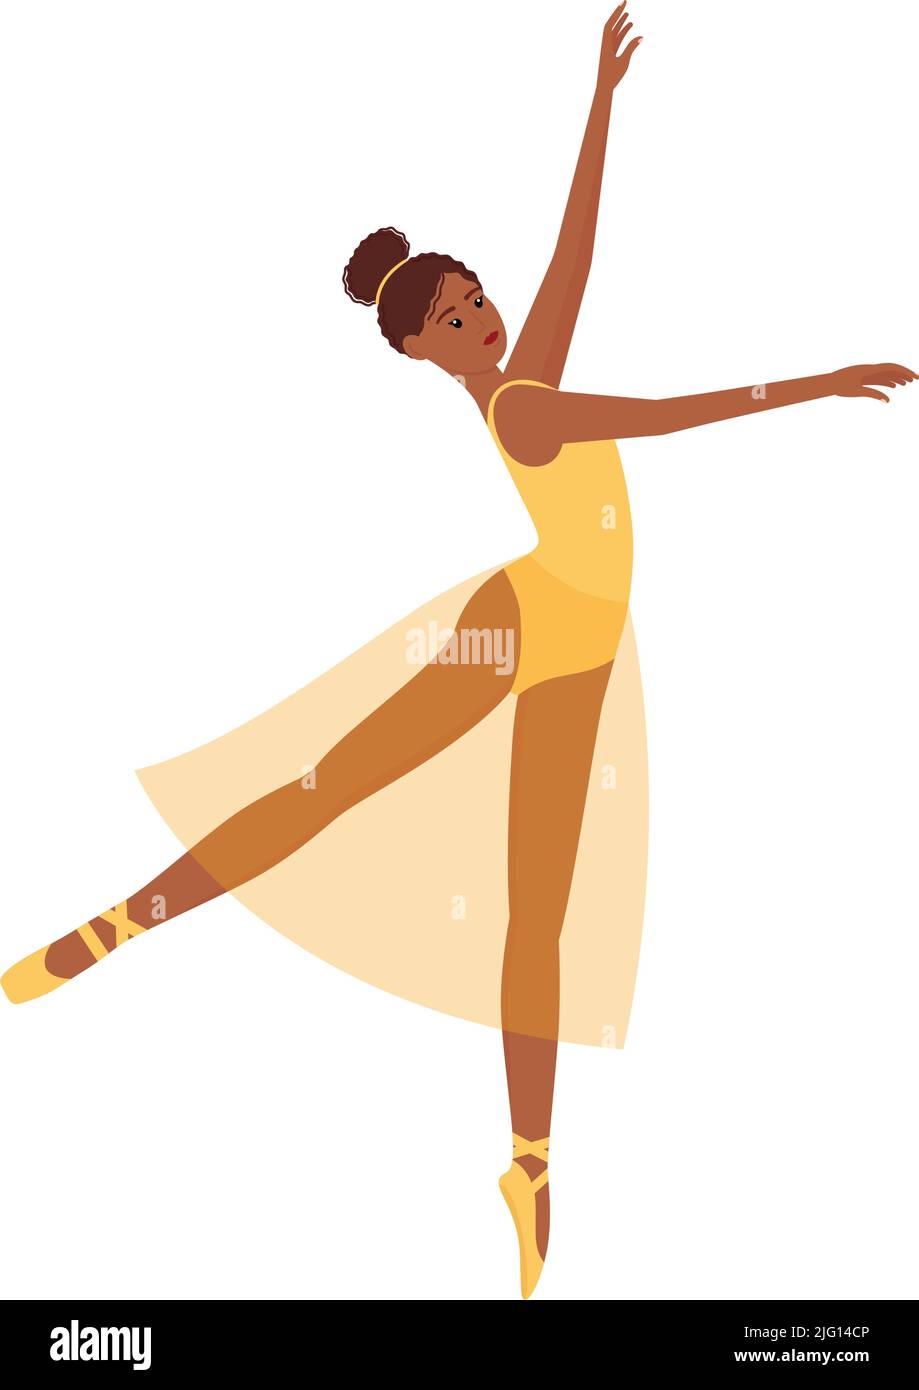 Ballerino. Bella ballerina danzante con tono della pelle scuro, illustrazione vettoriale Illustrazione Vettoriale